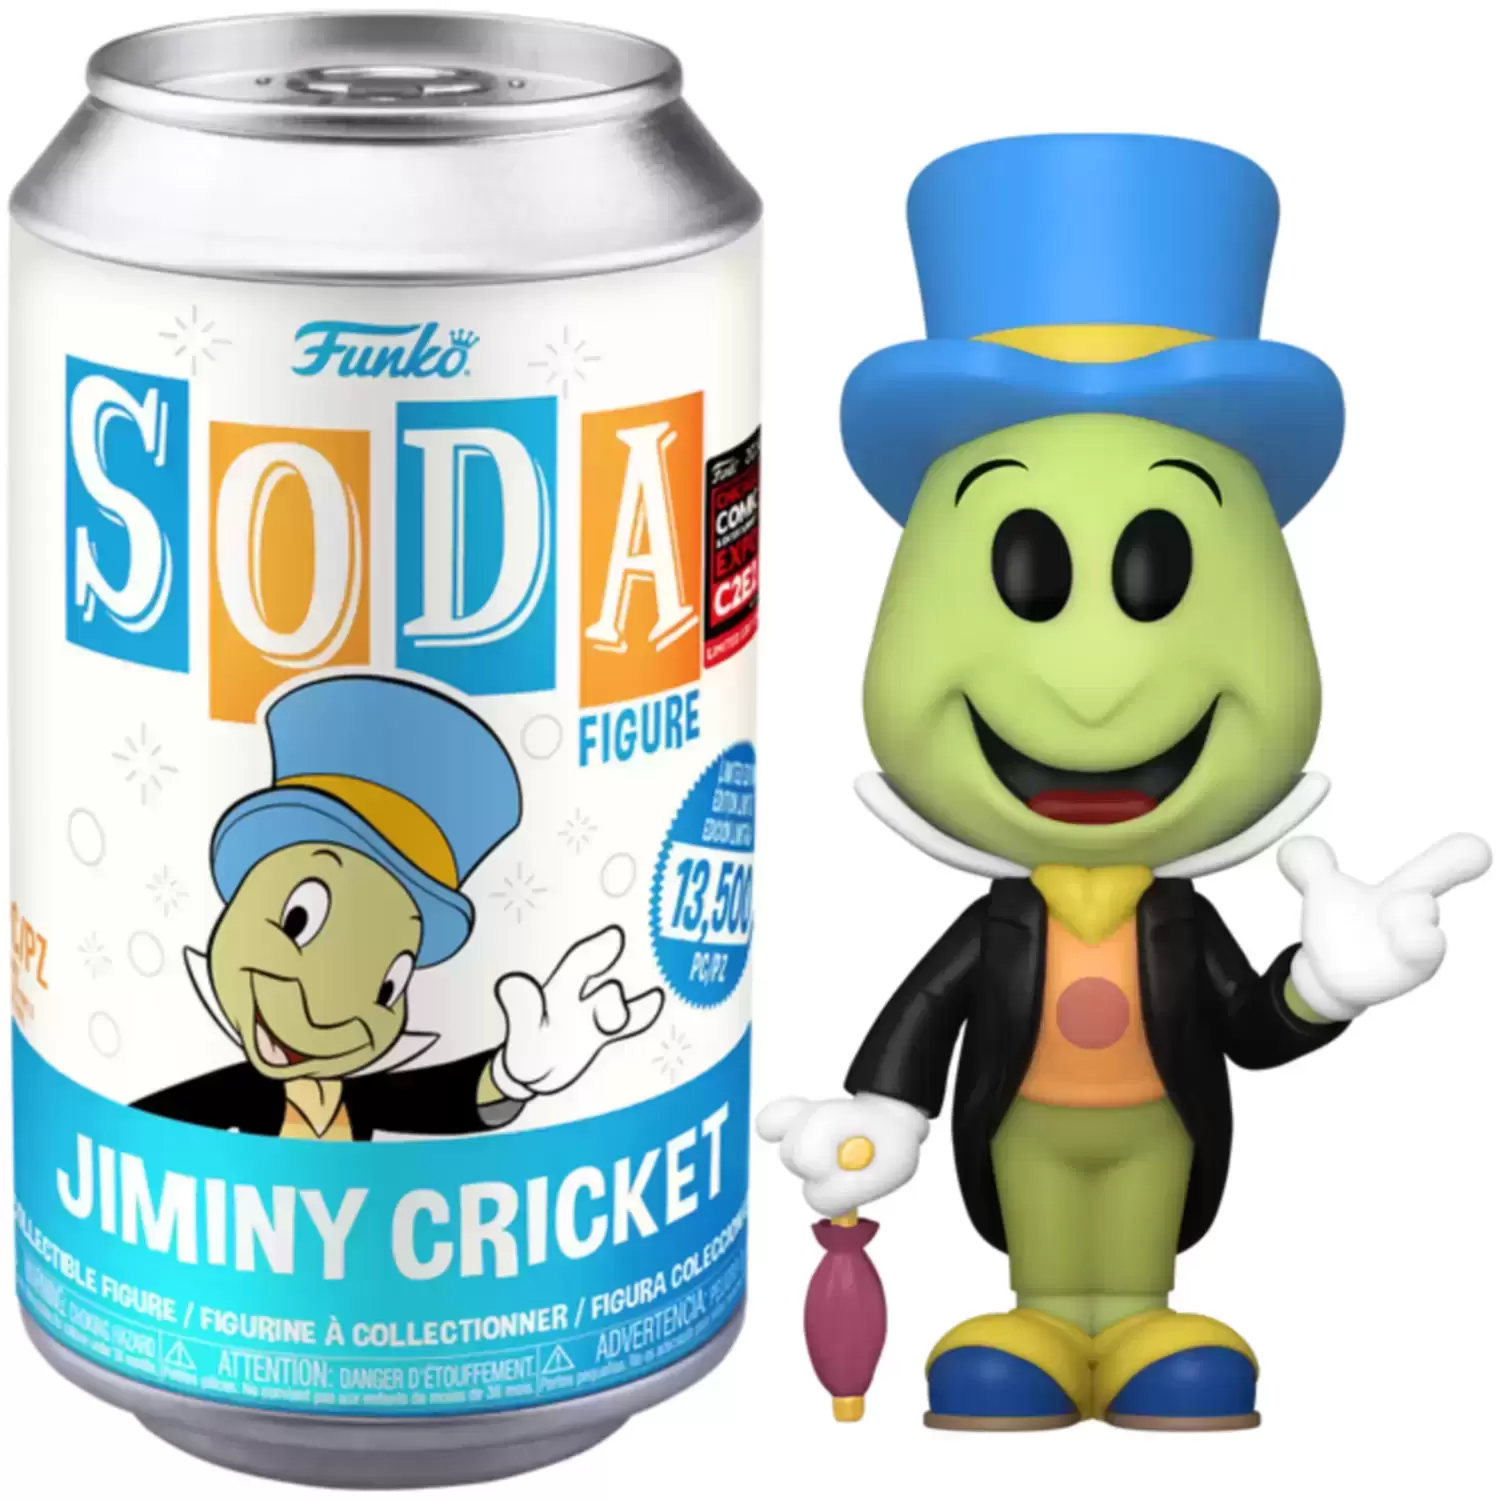 Vinyl Soda! - Pinocchio - Jiminy Cricket